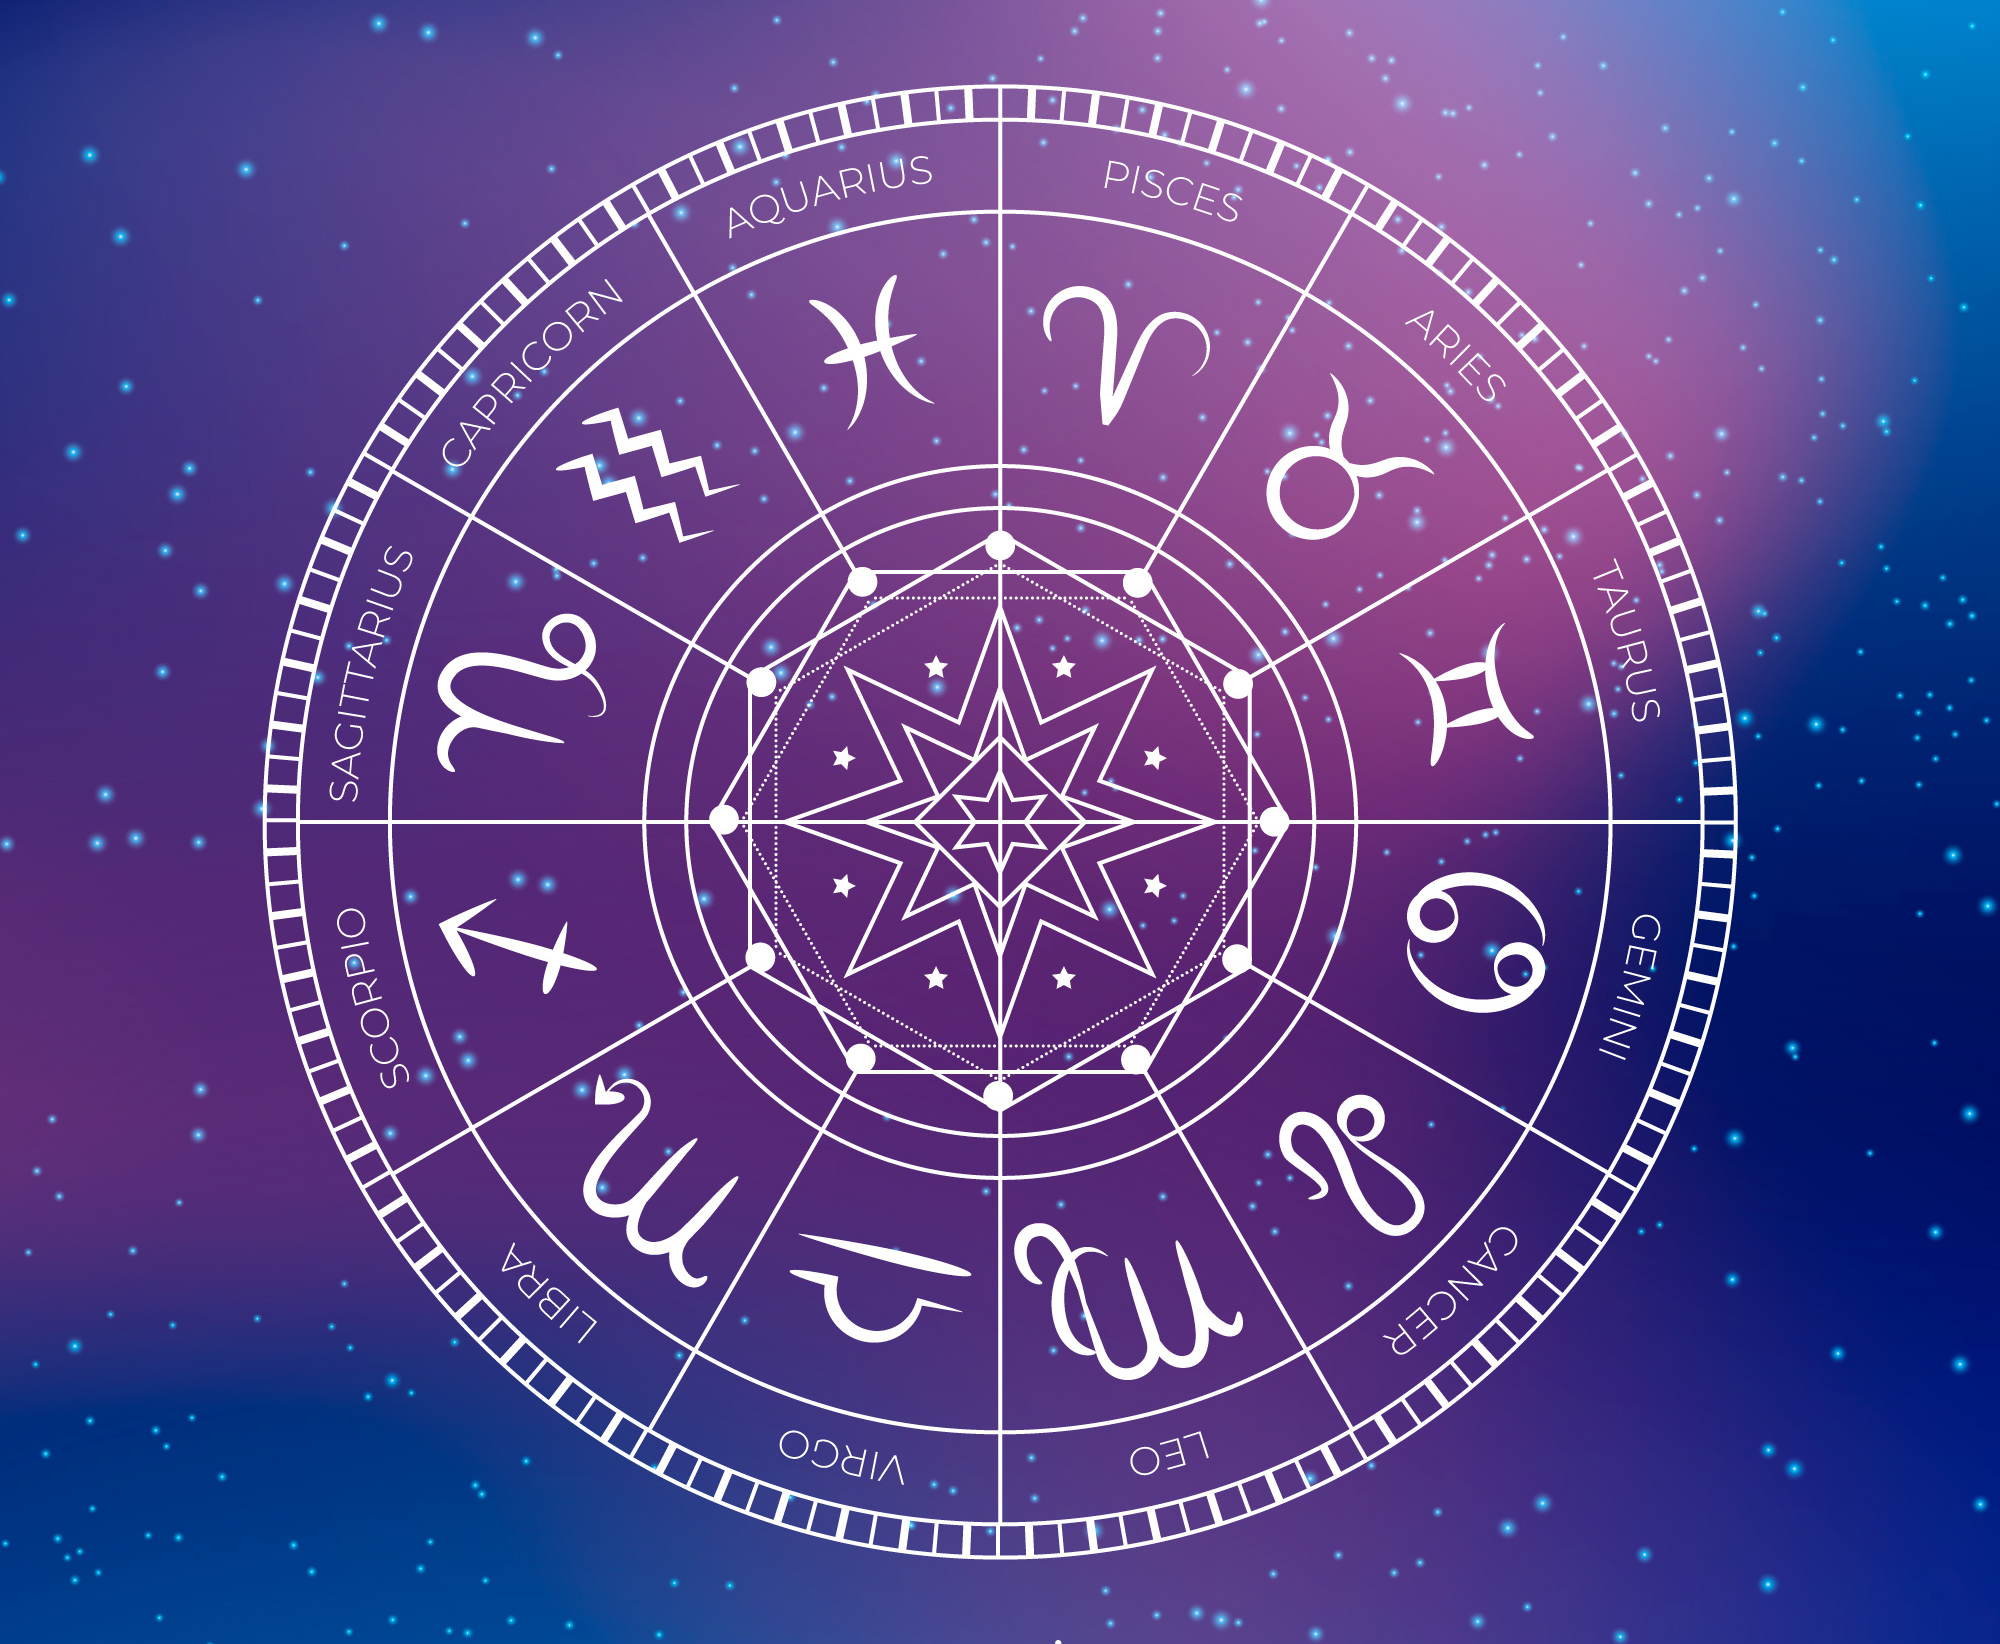 August Horoscopes - Network She